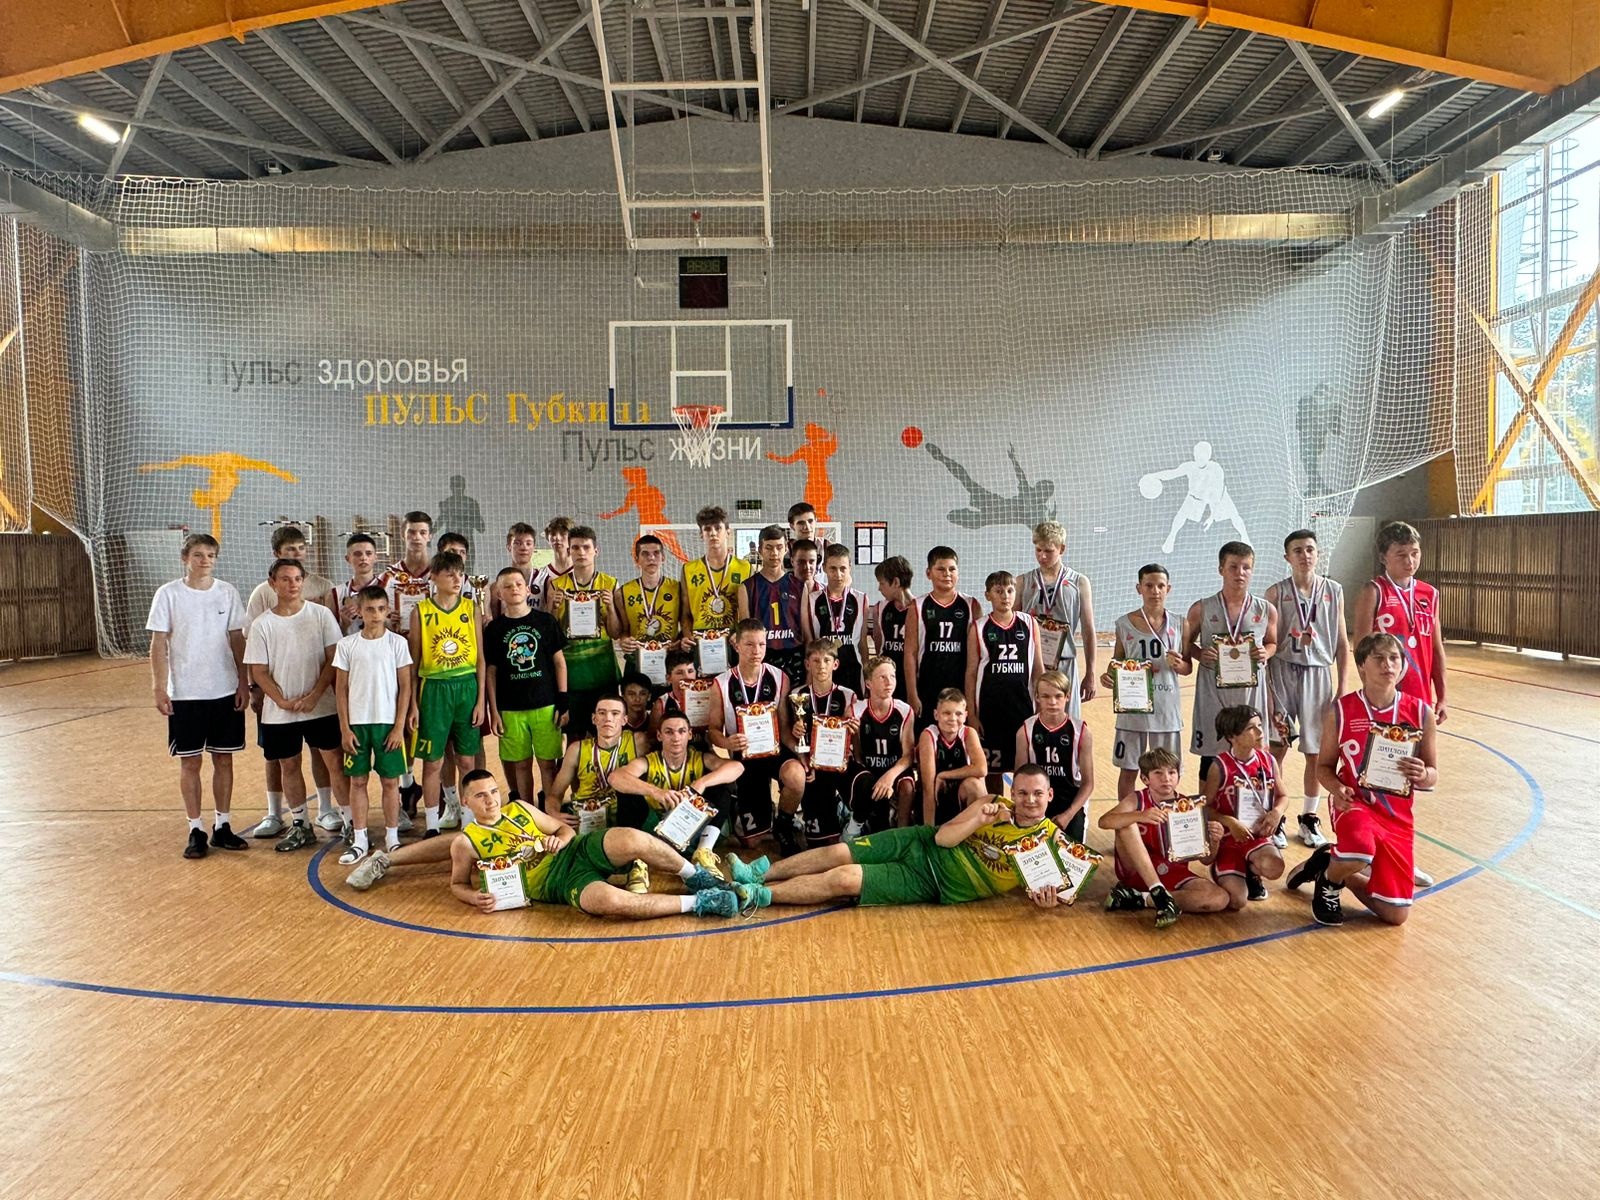 Прошли ежегодные традиционные соревнования по дворовому баскетболу «Оранжевый мяч».